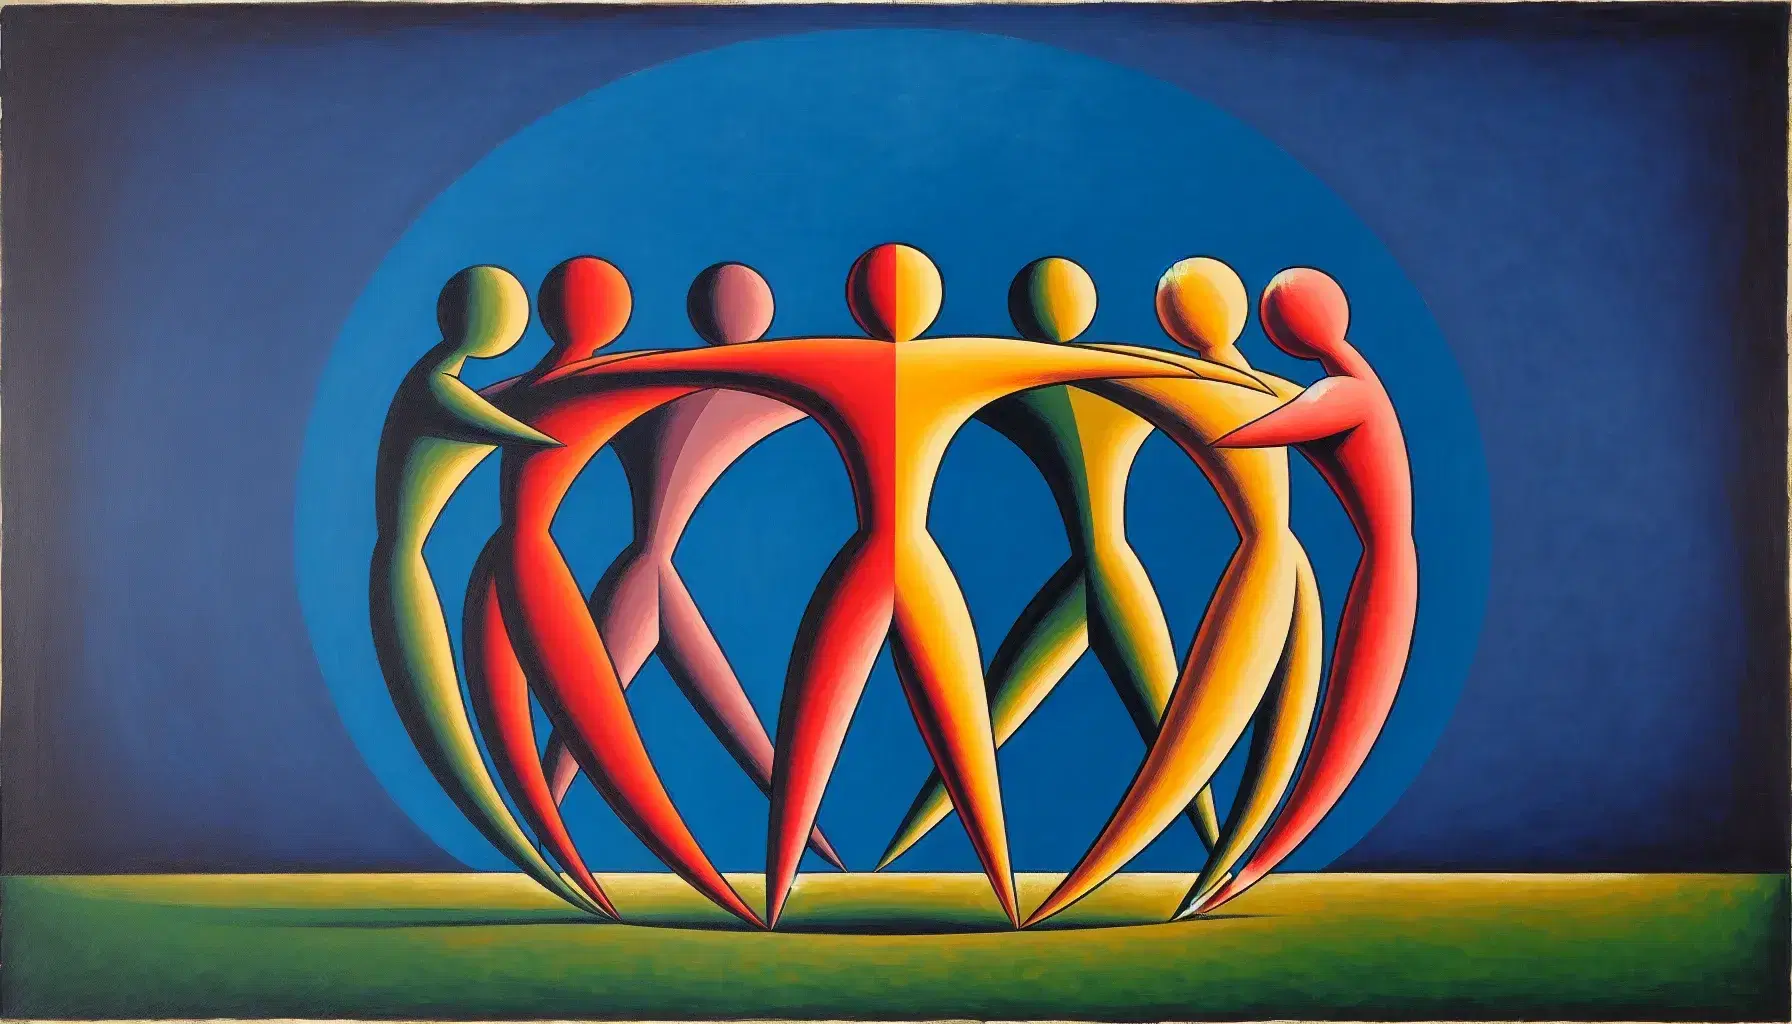 Cinque figure stilizzate si tengono per mano in cerchio su sfondo diviso tra cielo blu e prato verde, evocando danza e unità.